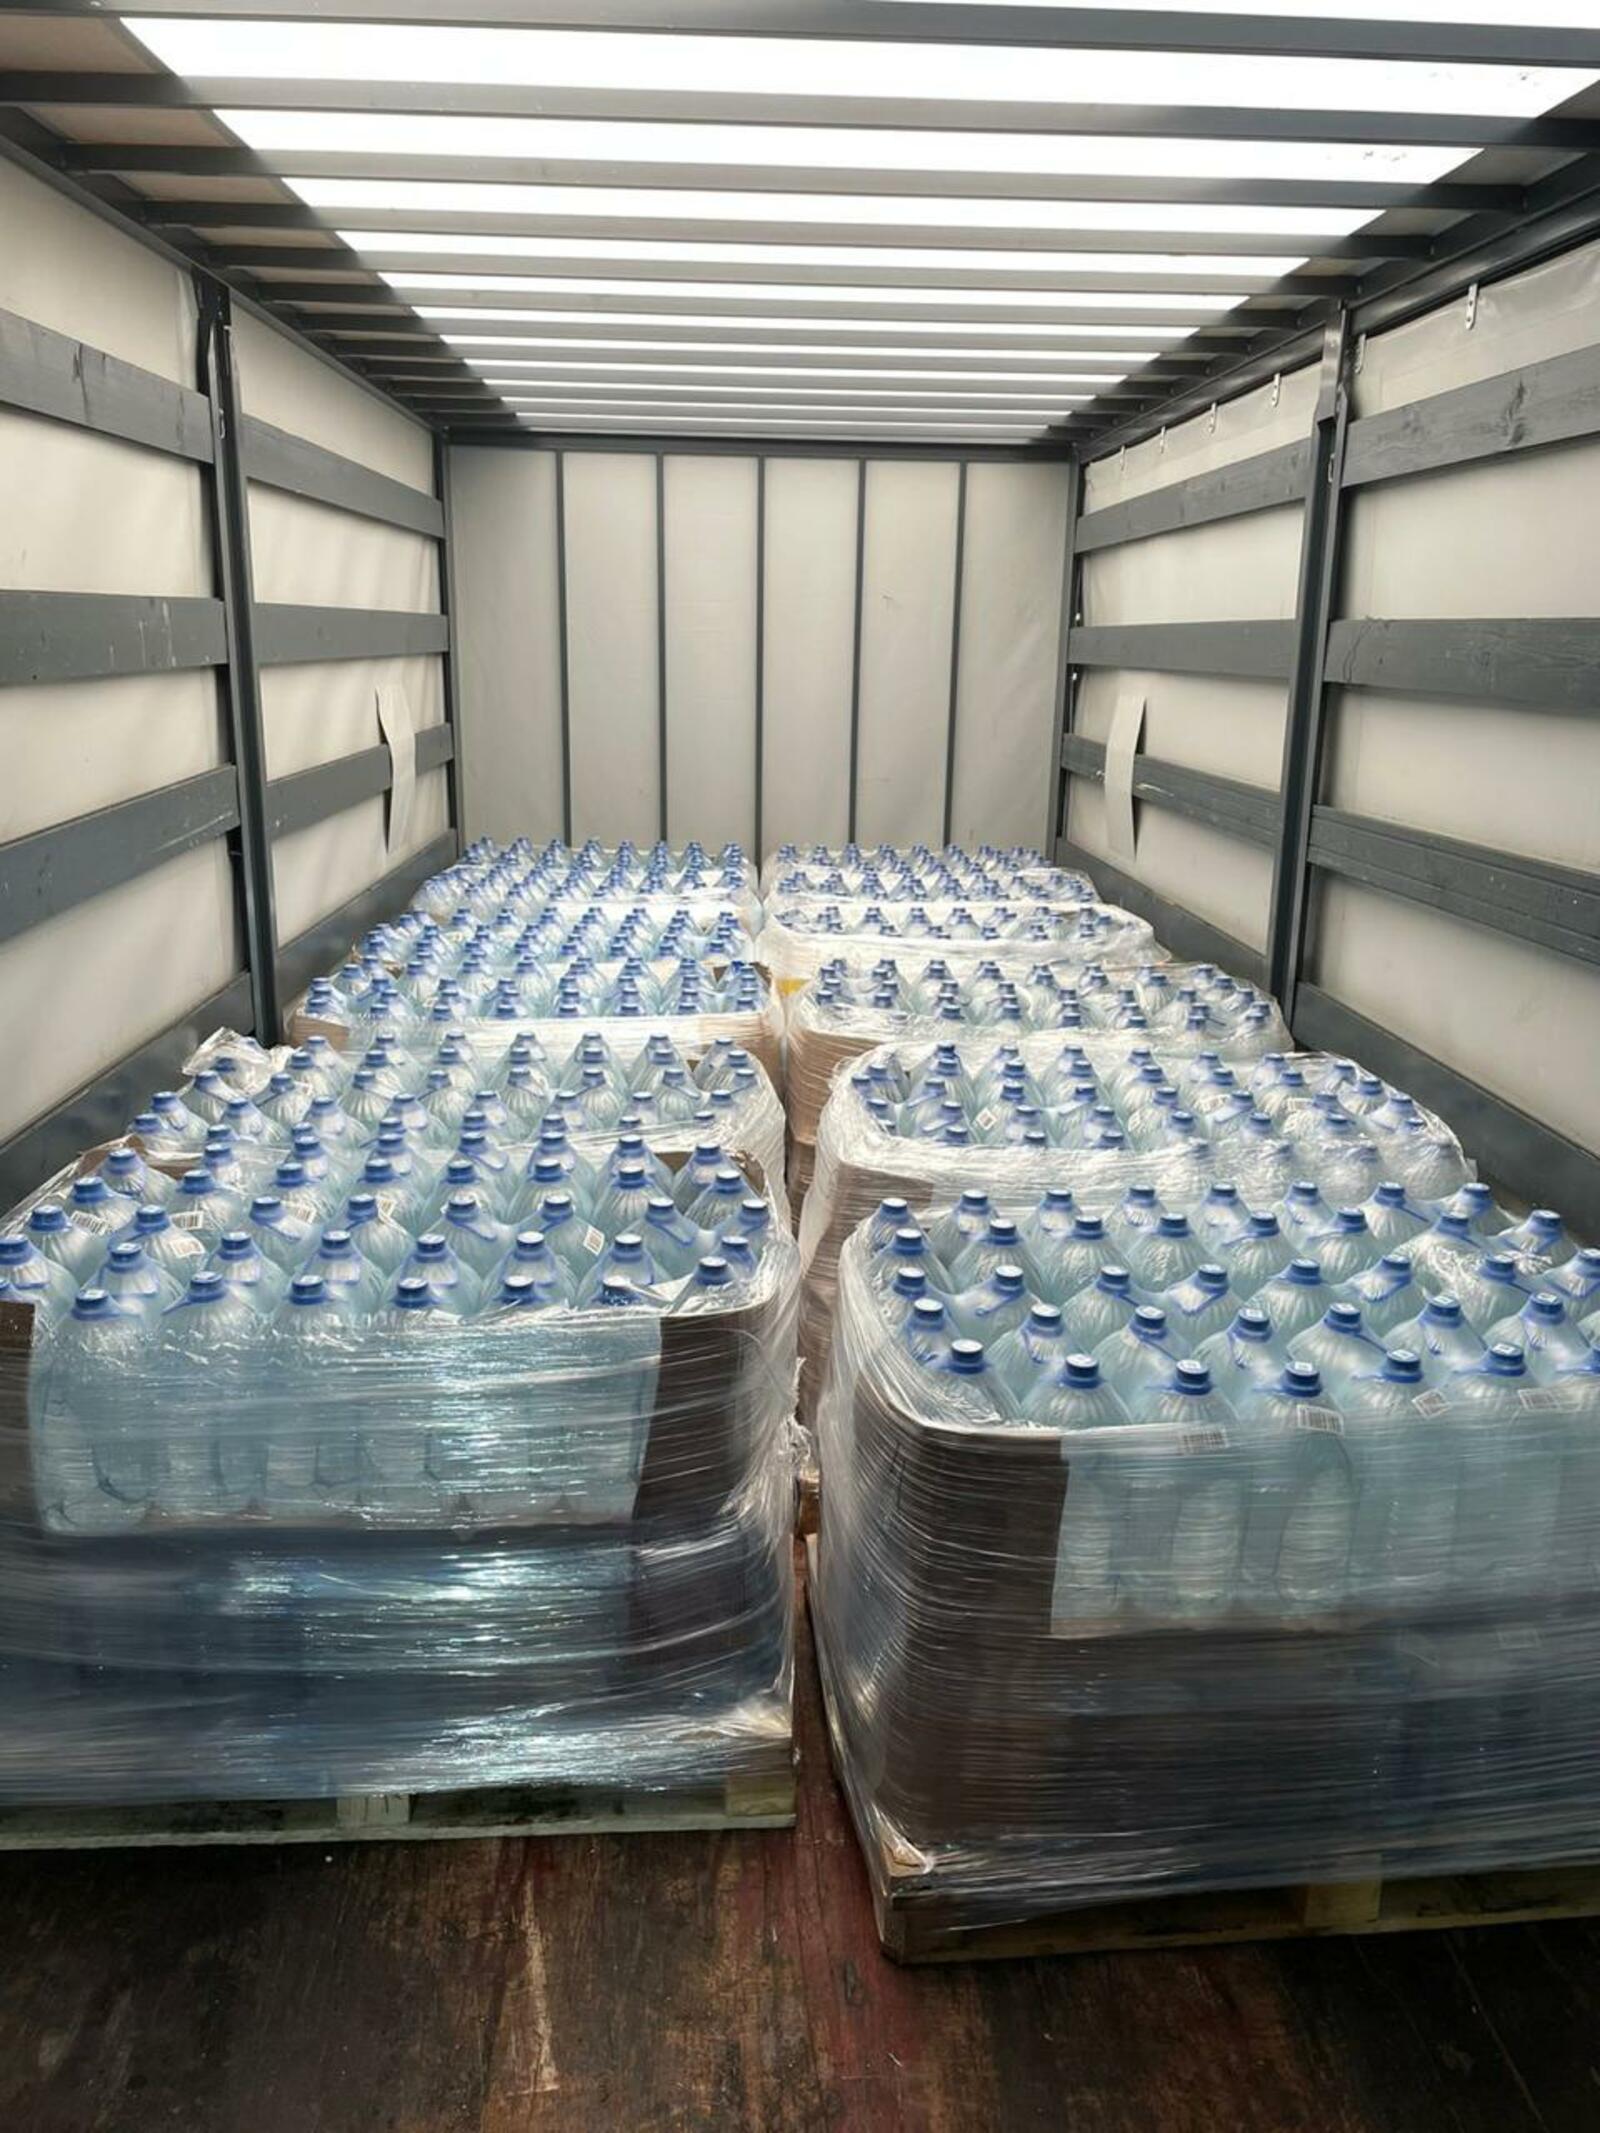 Депутаты Курултая Башкирии отправили питьевую воду пострадавшим жителям Орска